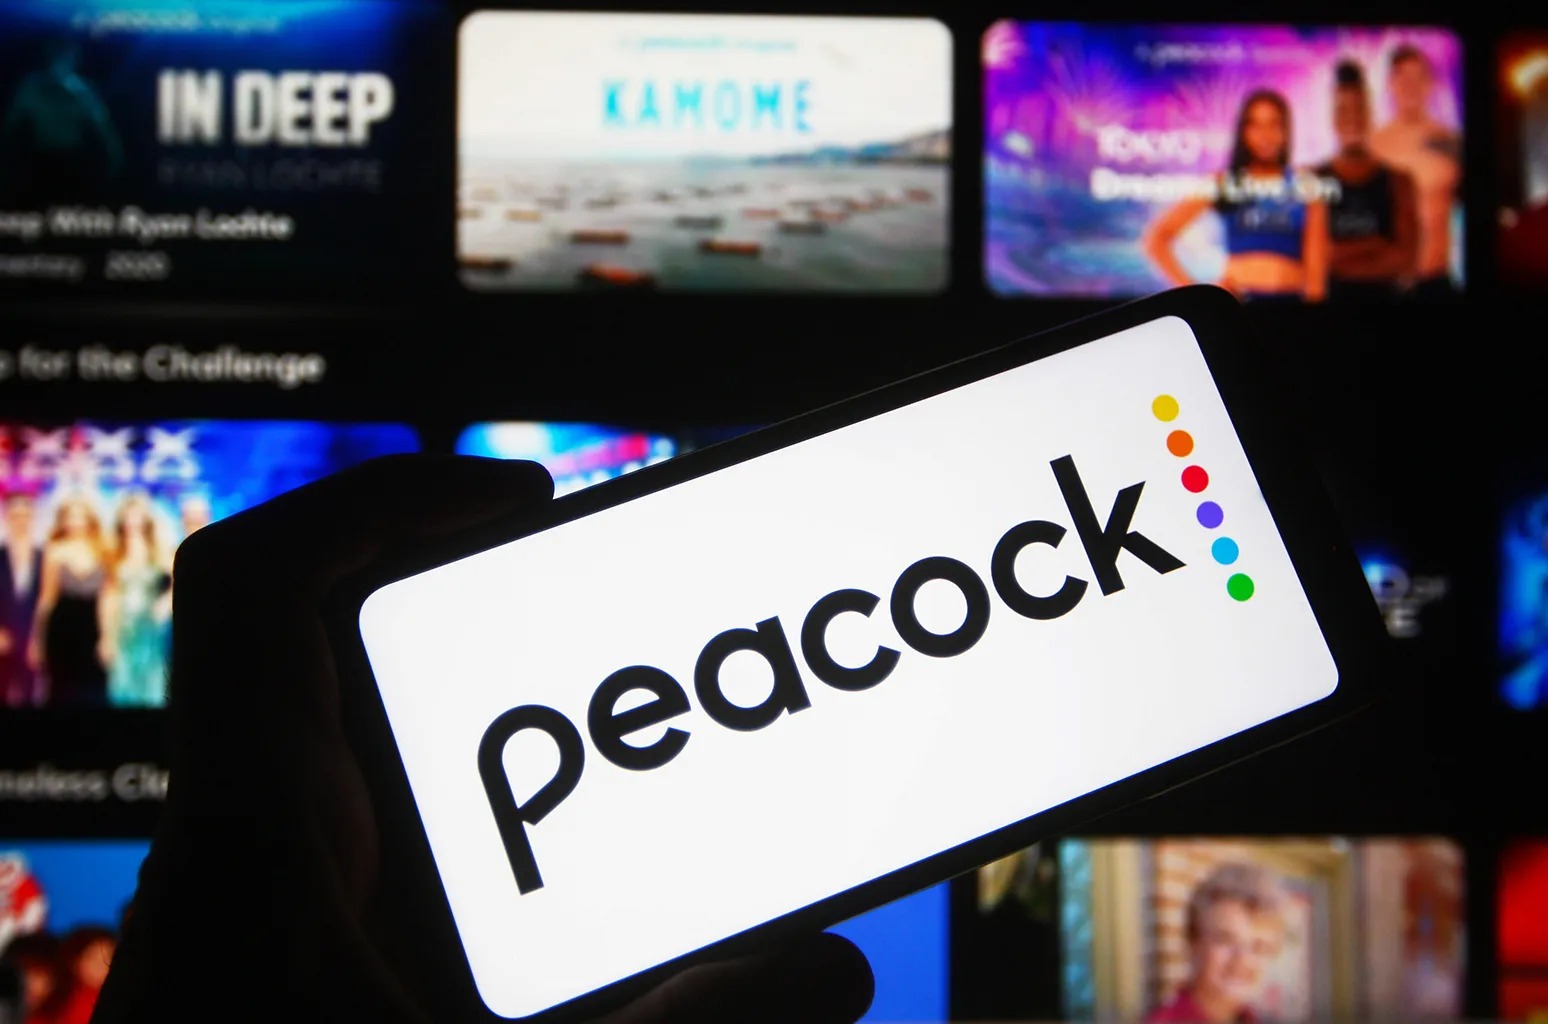 Peacock vai vir pro Brasil? TV Globo pode trazer famoso streaming americano